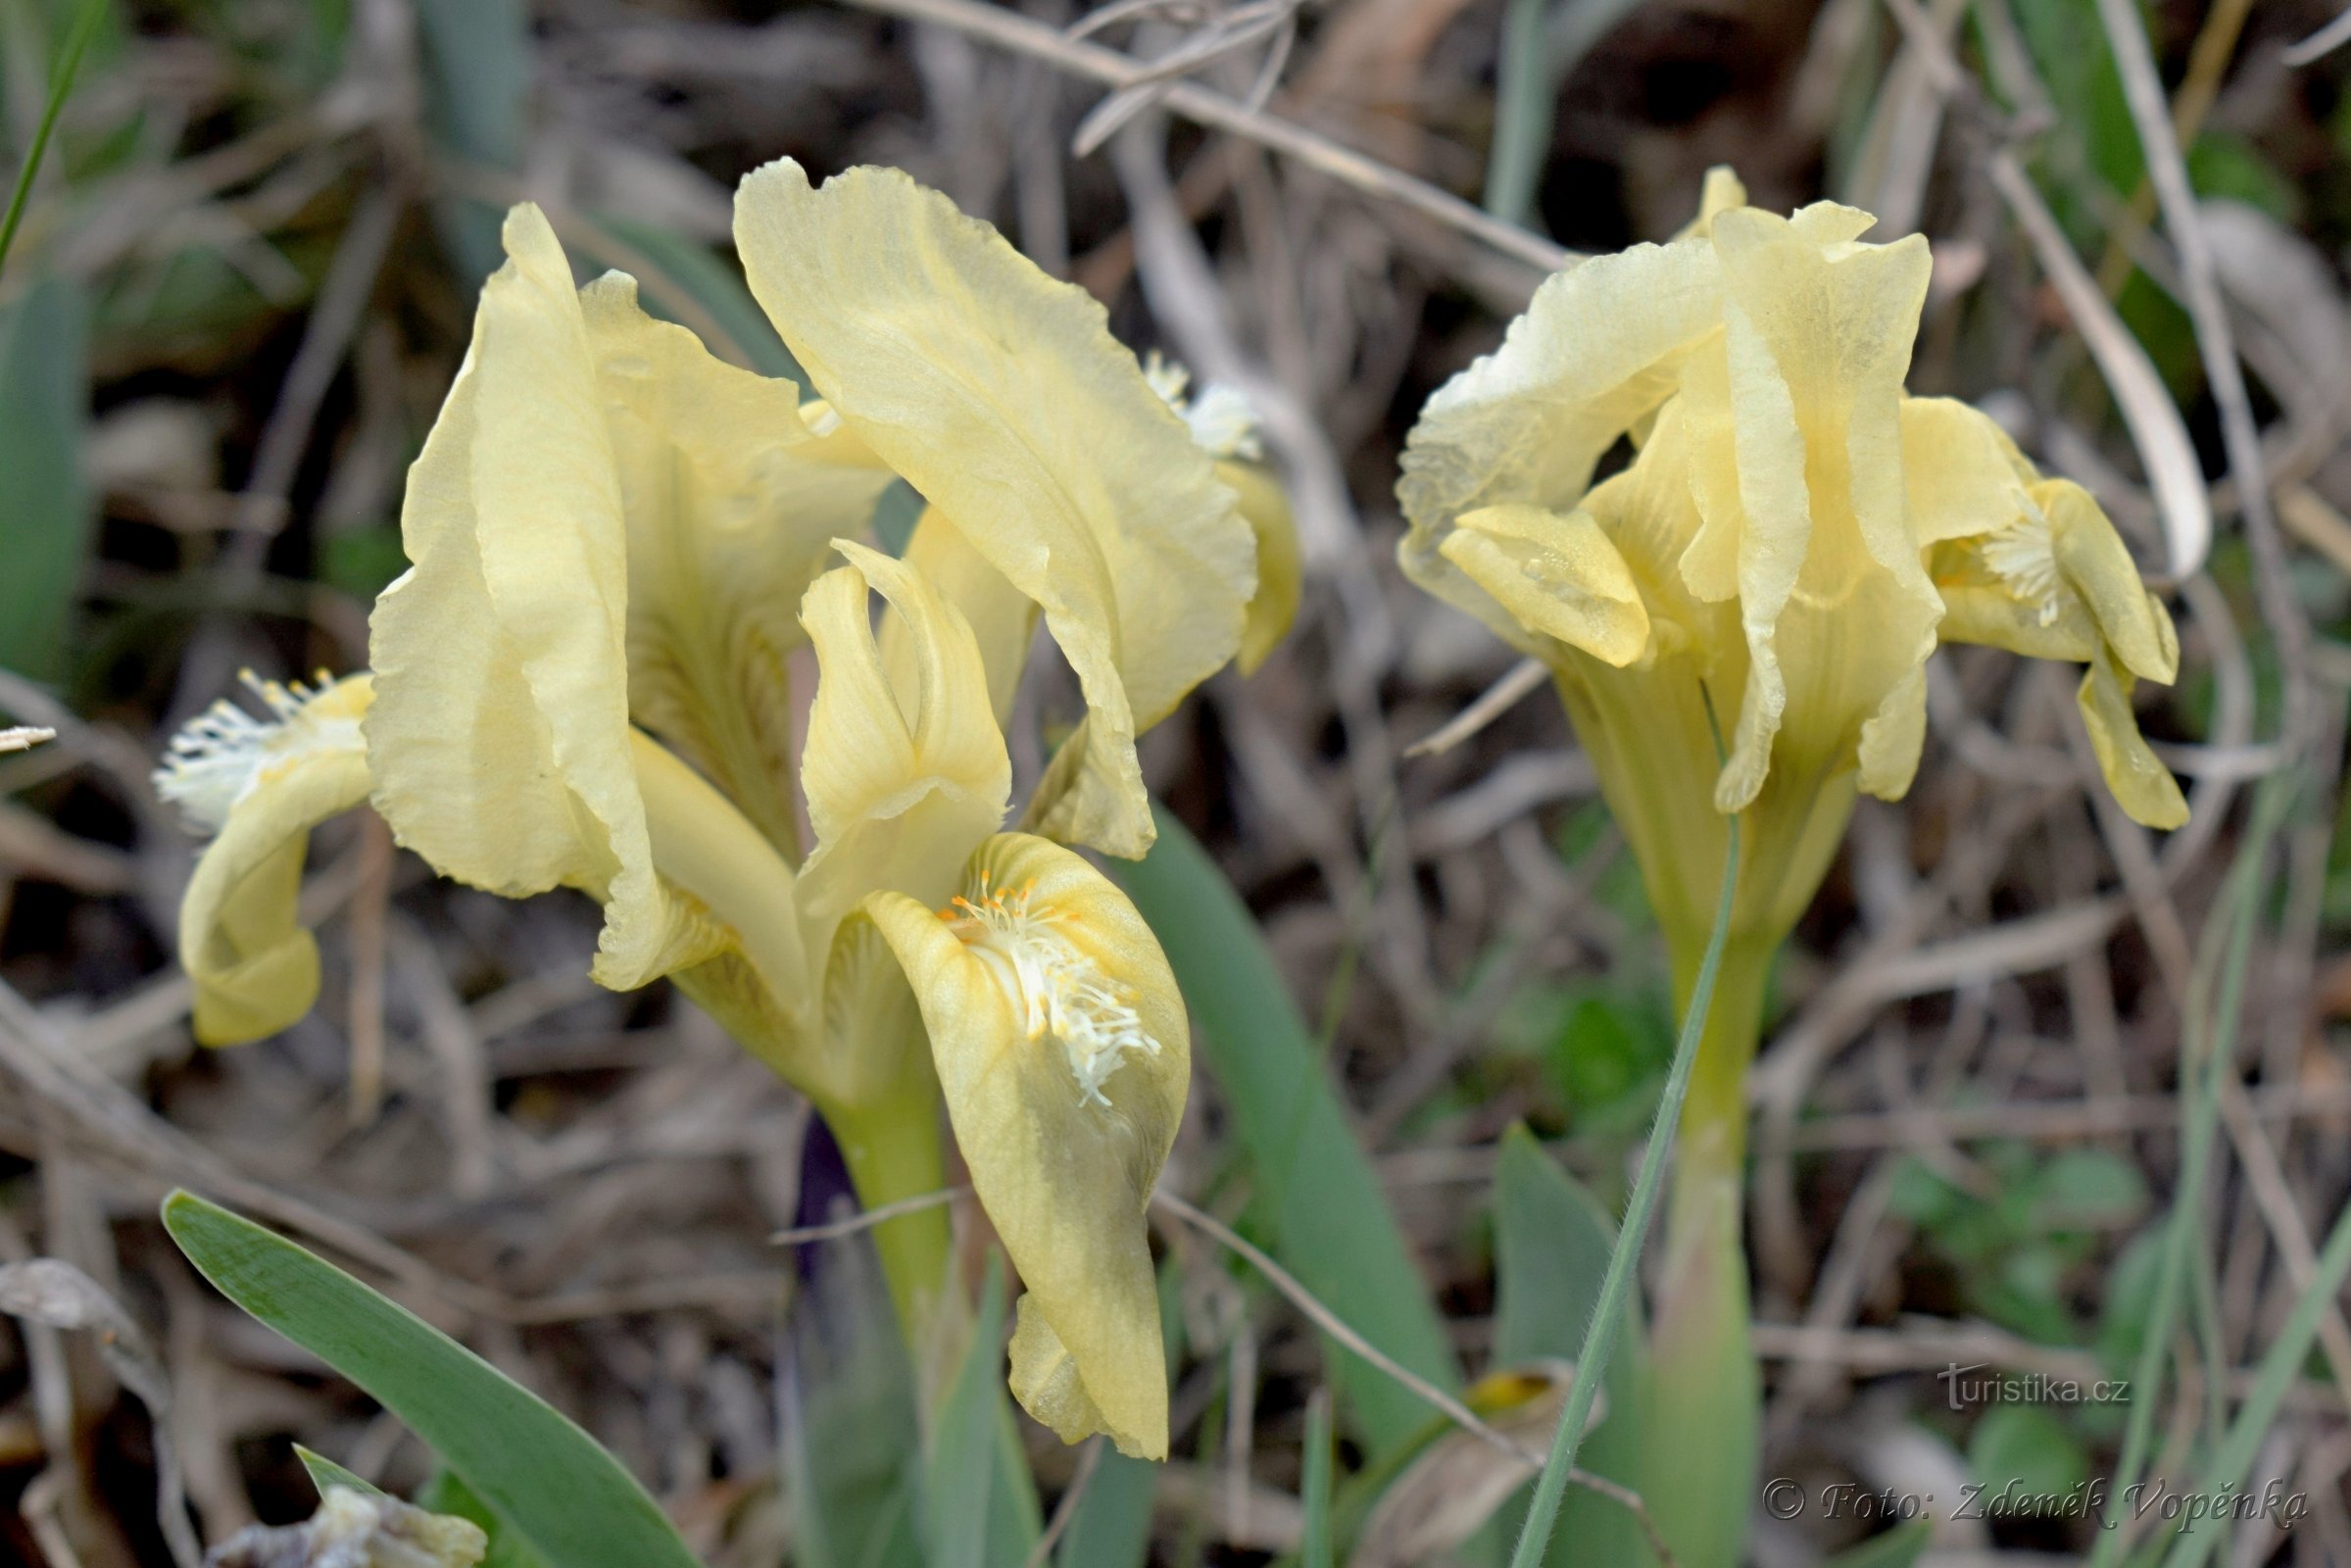 Iris de arena.